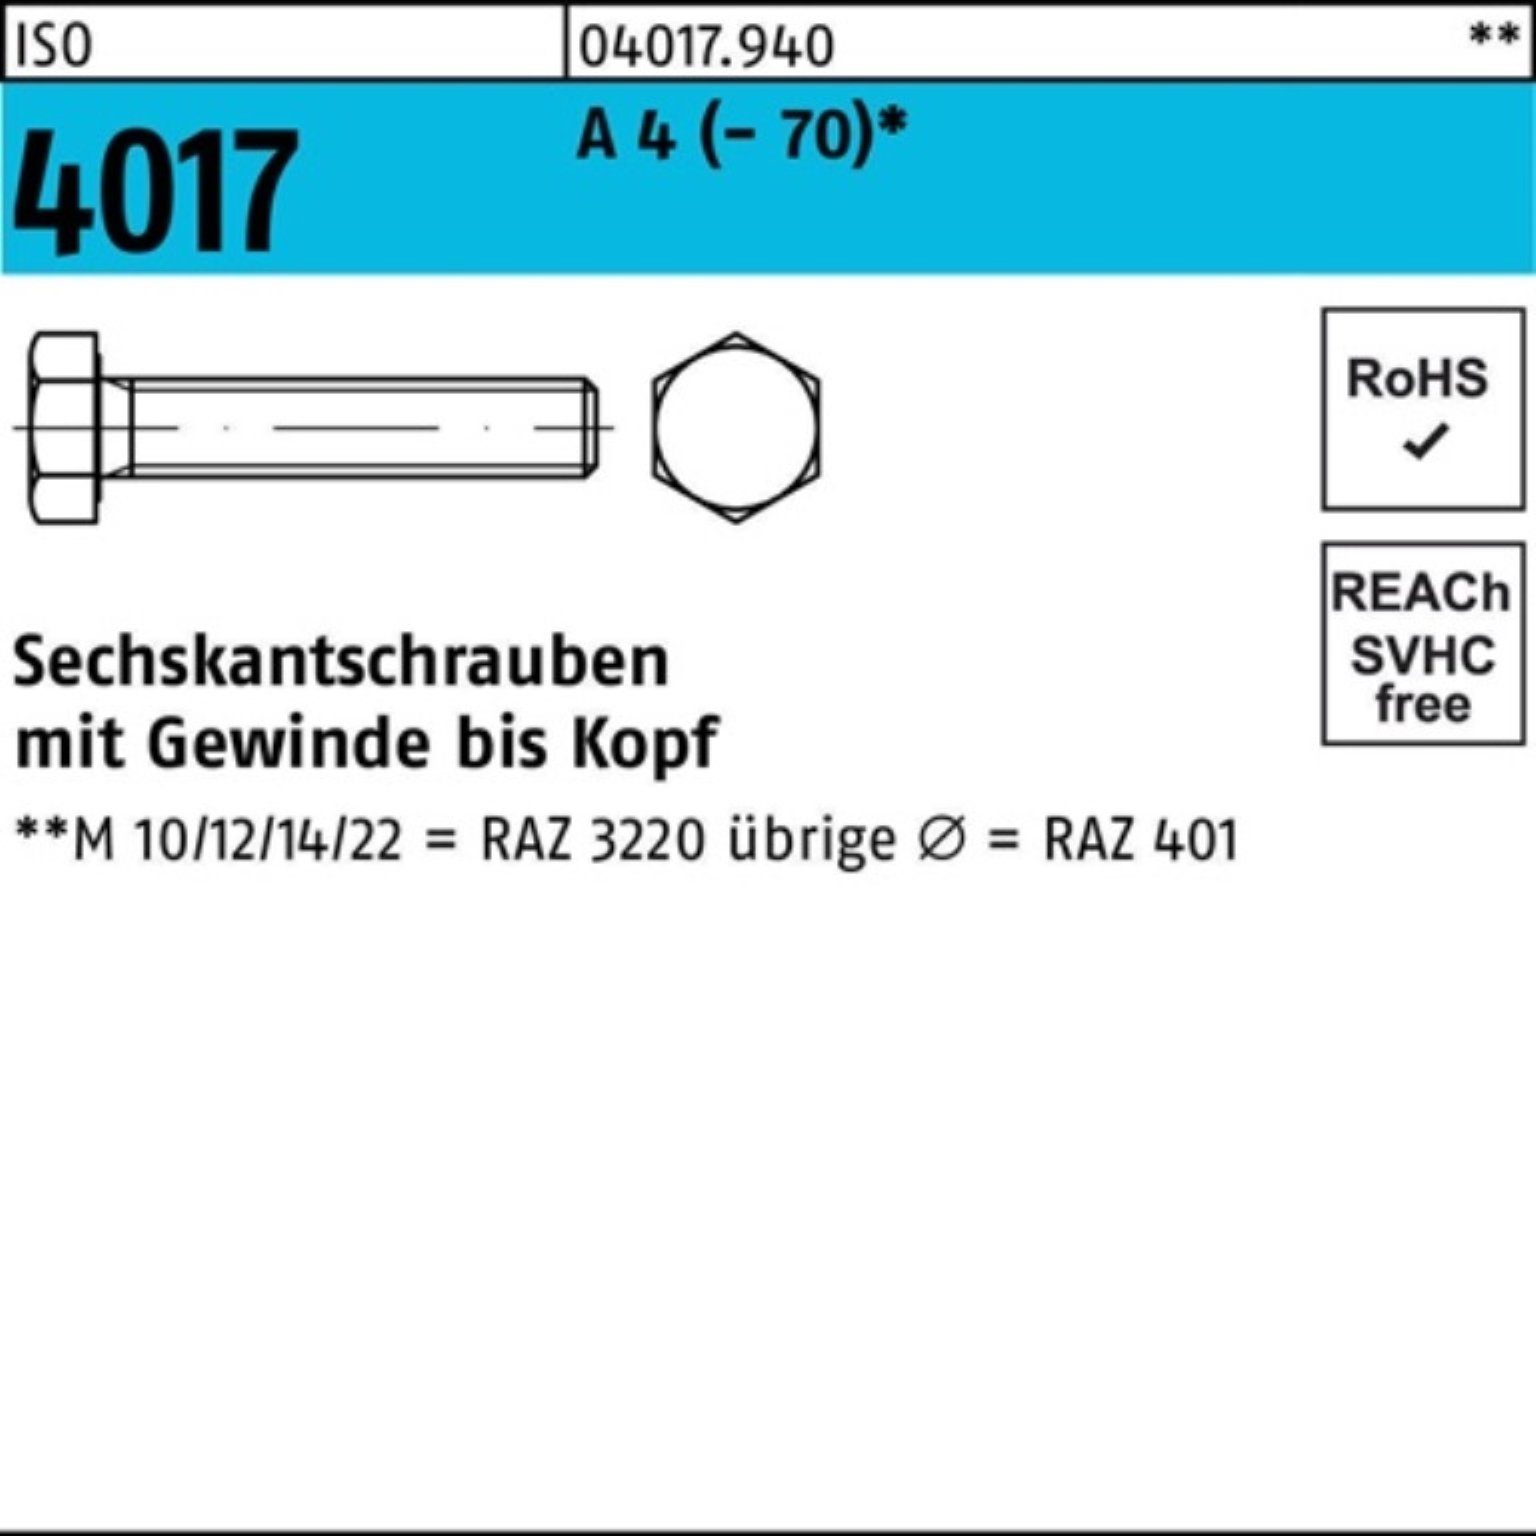 Bufab Sechskantschraube 100er Pack Sechskantschraube ISO 4017 VG M12x 18 A 4 (70) 100 Stück